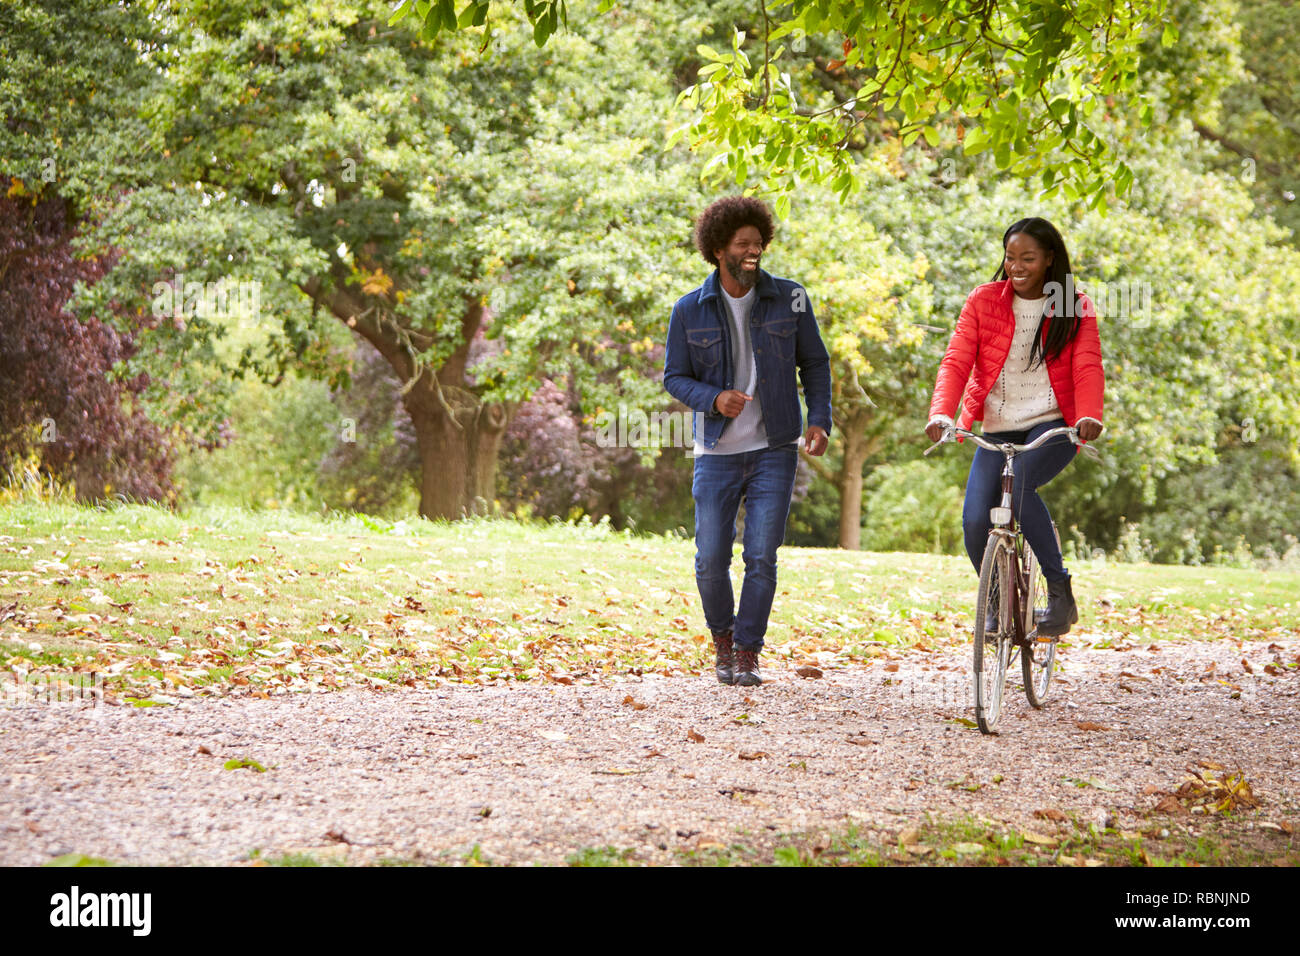 Black couple s'amusant dans un parc, le woman riding a bike, front view Banque D'Images